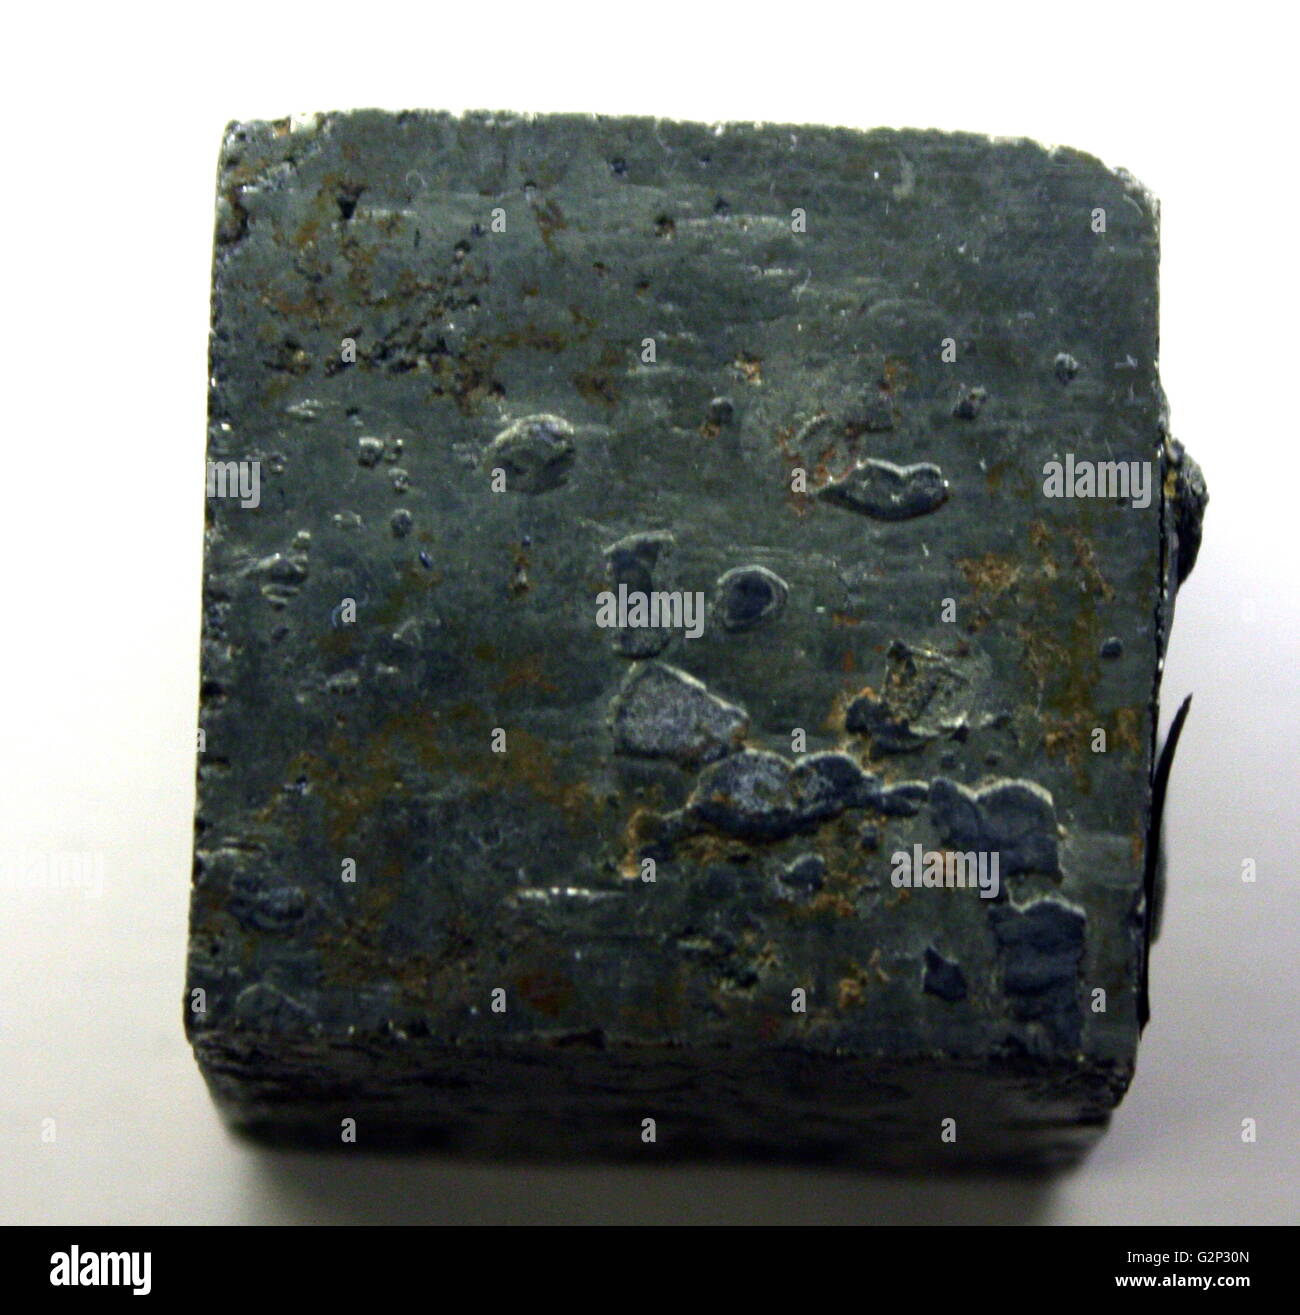 Un bloc carré de la pyrite, également connu sous le nom de sulfure de fer. La surface exposée est souvent un éclat métallique qui a conduit à son surnom de 'fools gold'. Le bloc de pyrite dans cette image a une surface oxydée, plus sombre. Il est le plus commun de tous les minéraux sulfurés. Banque D'Images